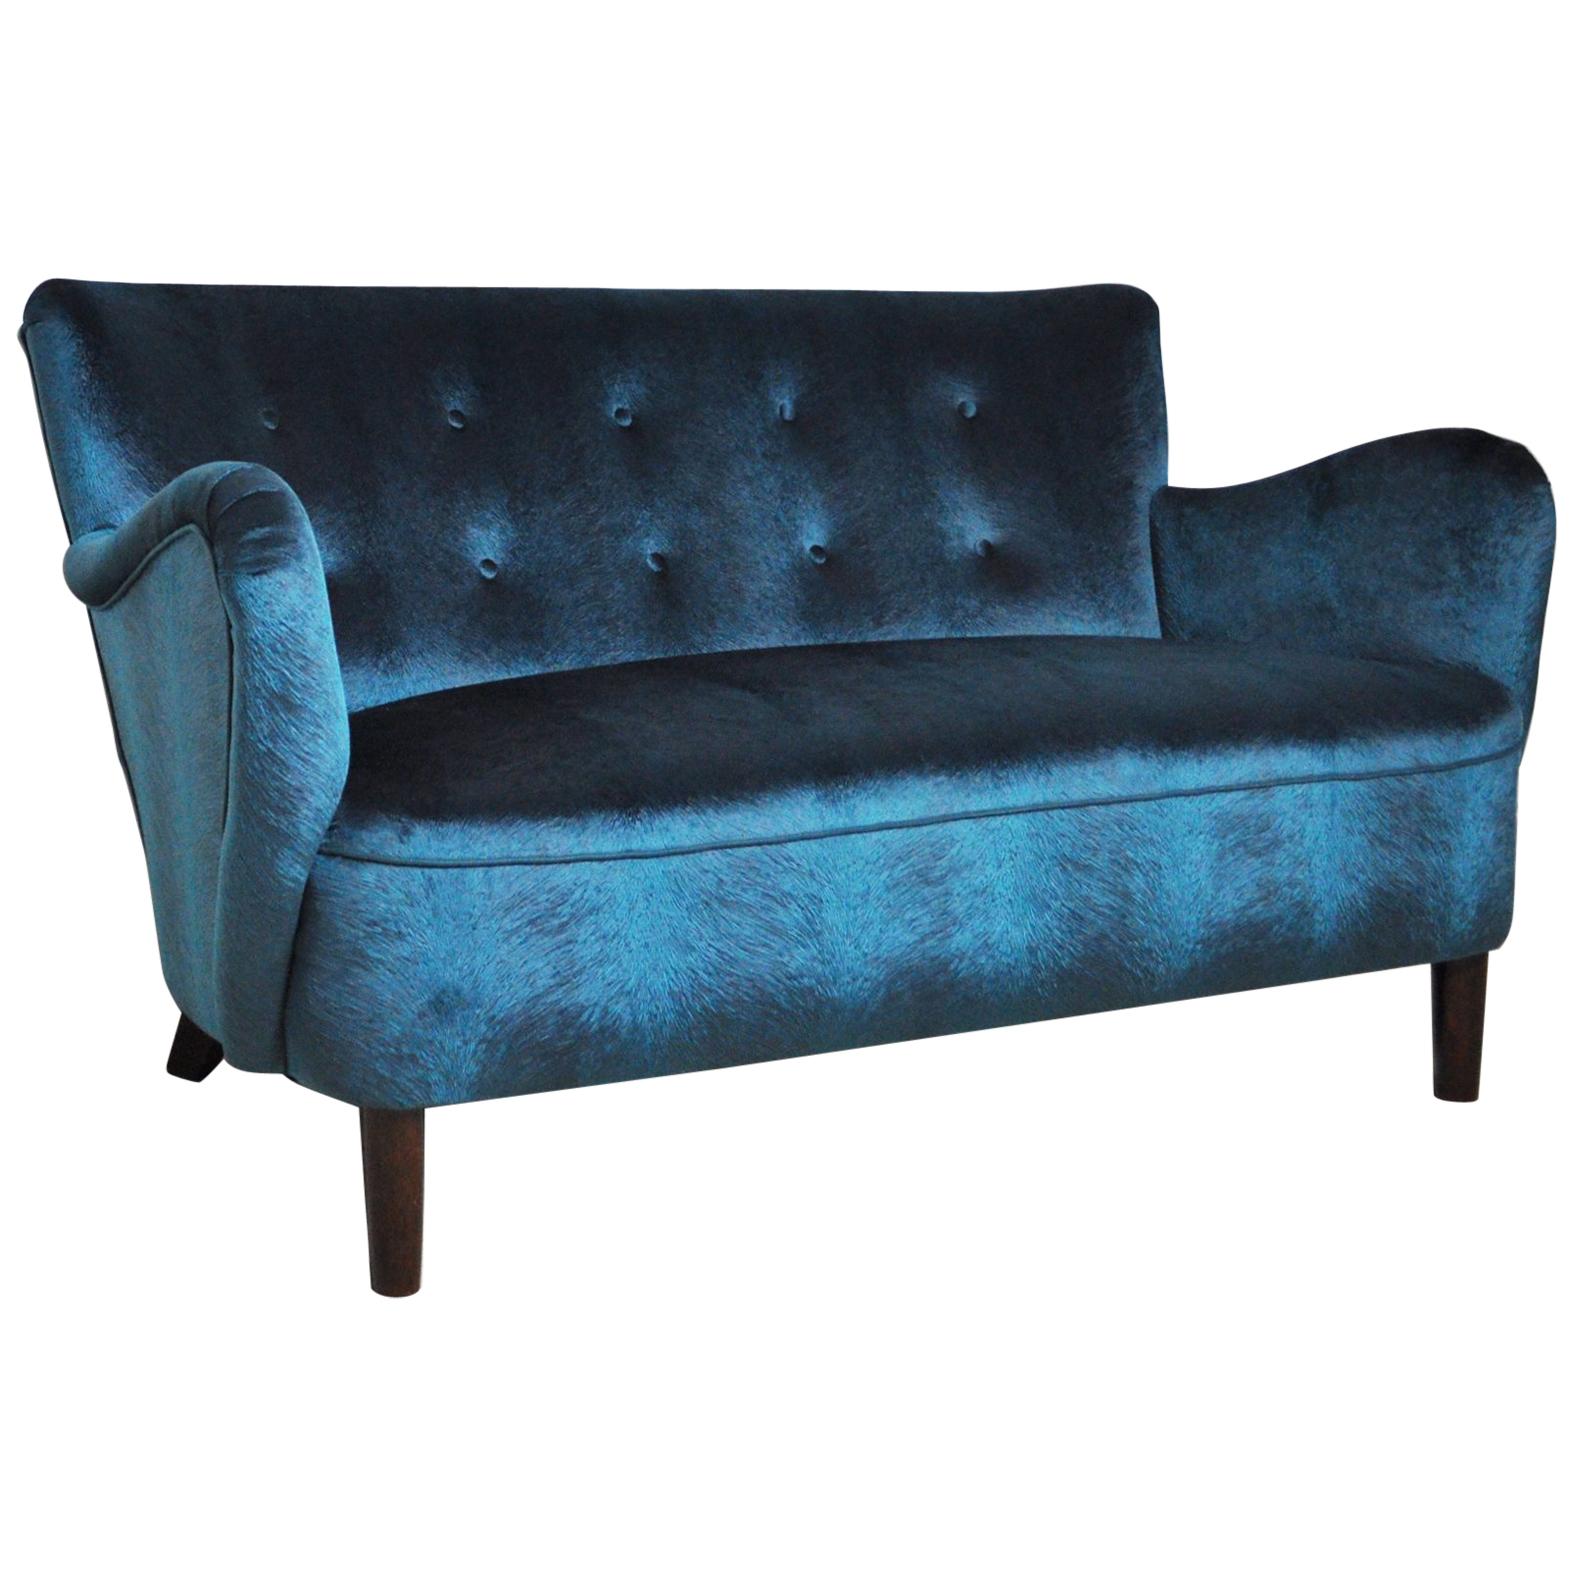 Elegant Early Midcentury Curved Sofa in Blue Velvet New Upholstery For Sale